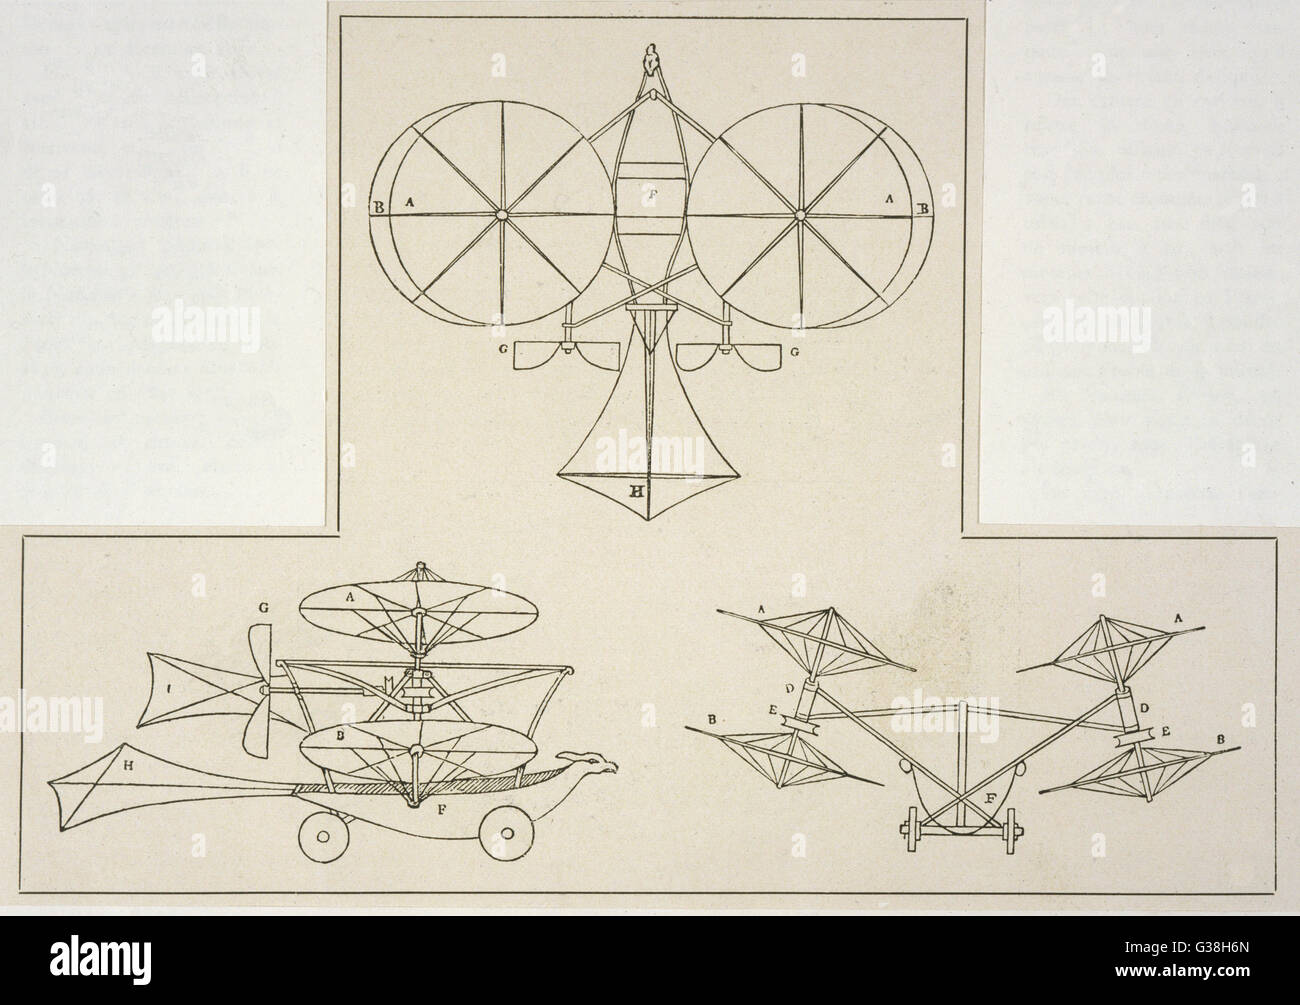 CAYLEY'S HELICÓPTERO-avión con dos rotores de helicóptero lateral para proporcionar elevación, y dos hélices para la propulsión, esta es una sorprendente propuesta clarivi dente Fecha: 1843 Foto de stock